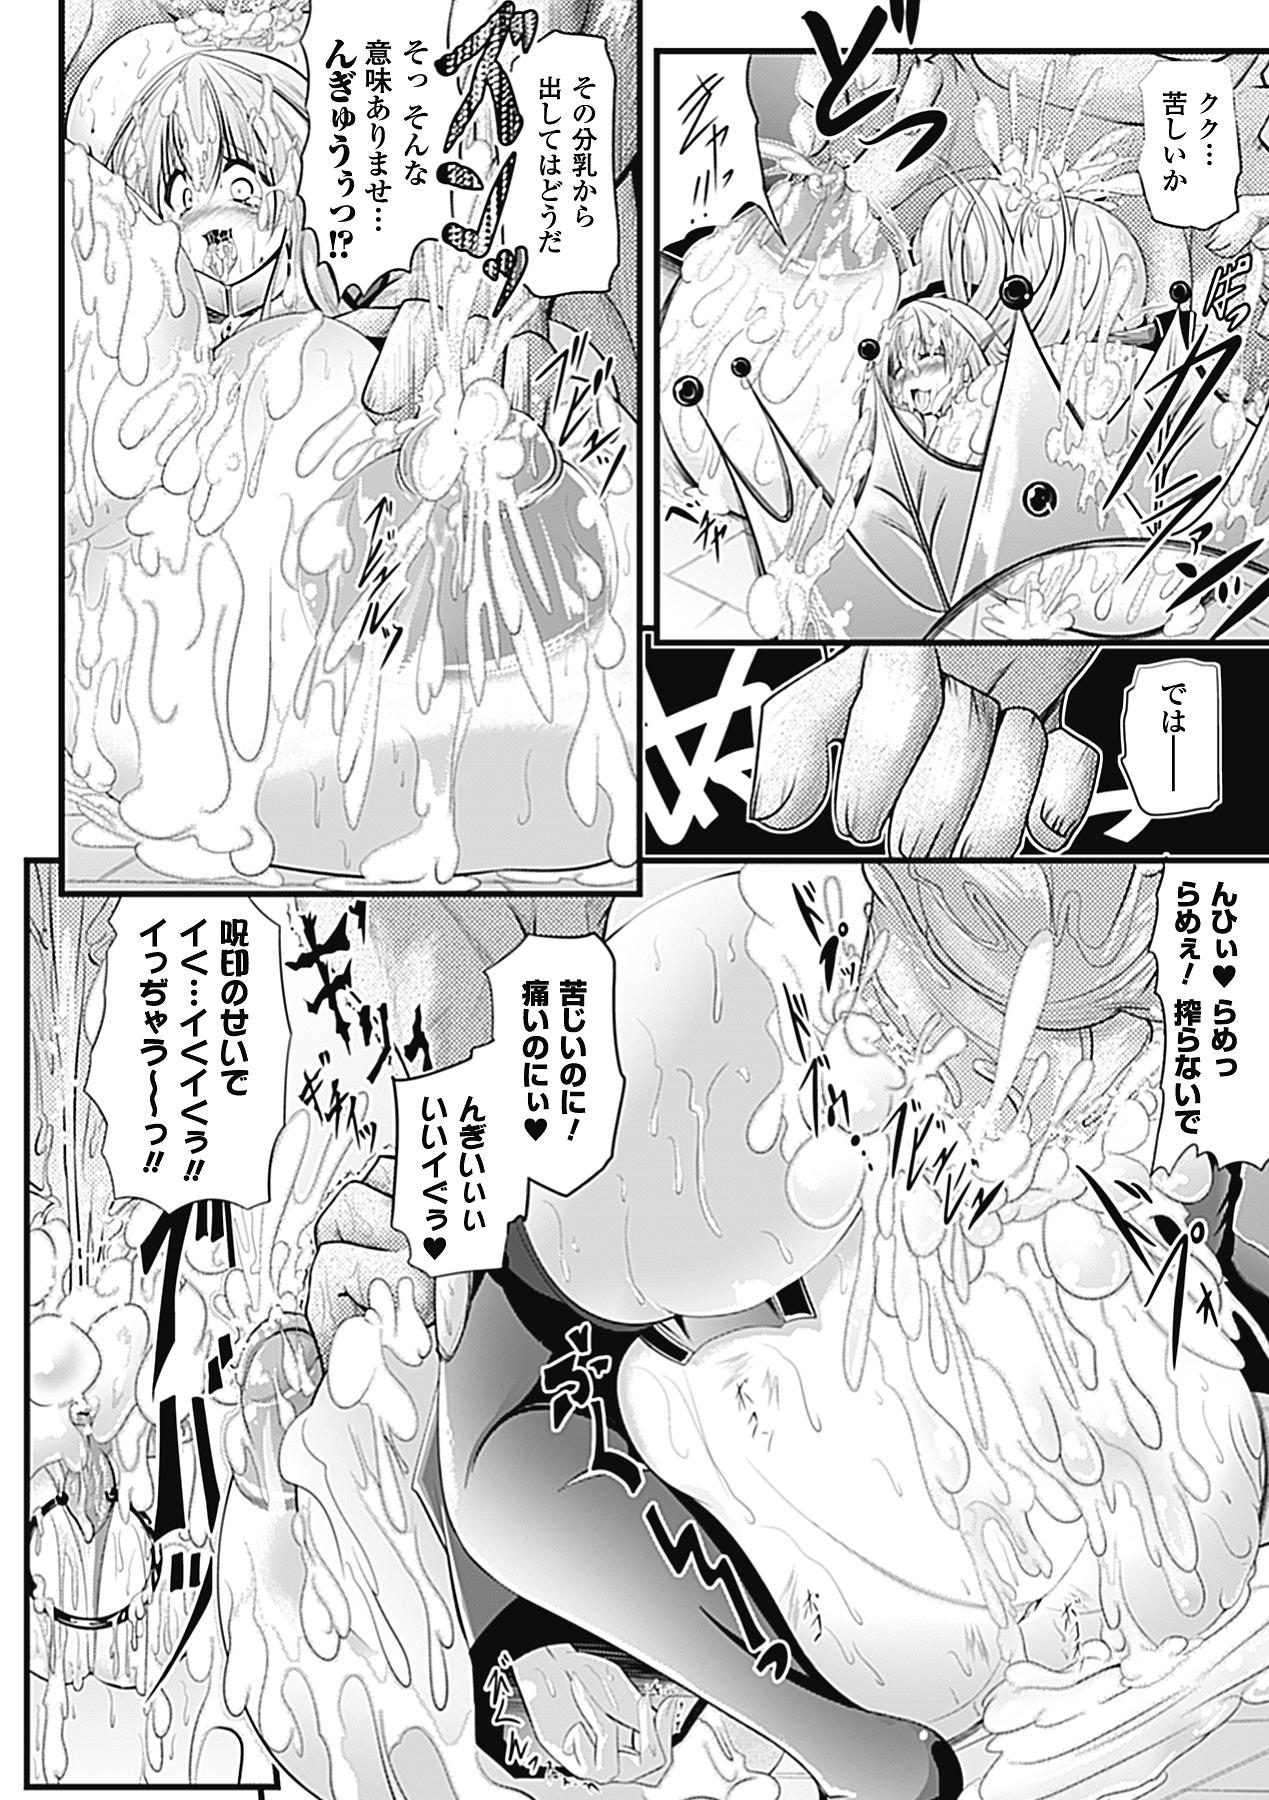 huge_breasts_manga 92